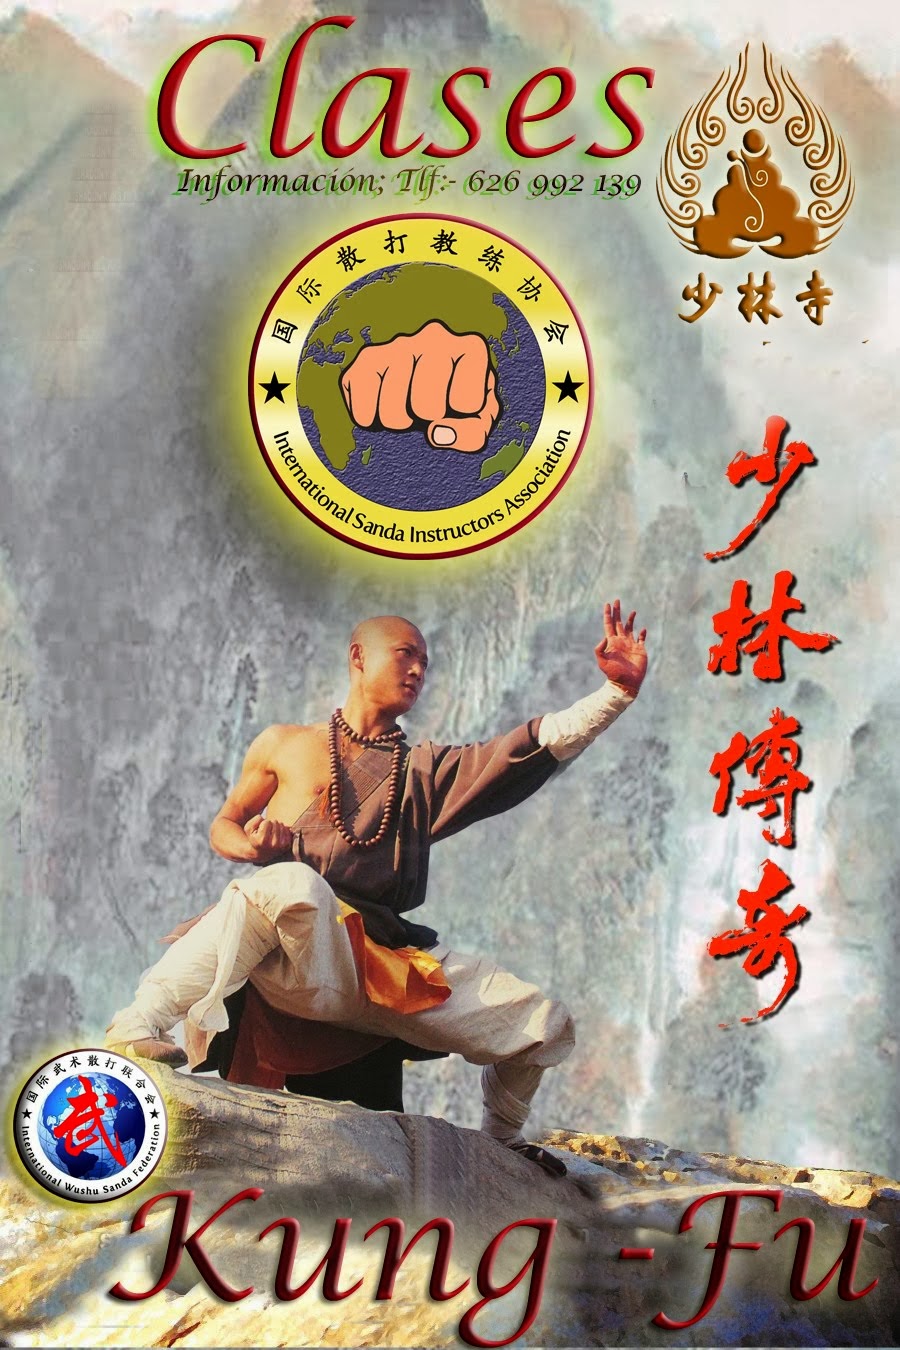 clases de kung fu y sanda 2014